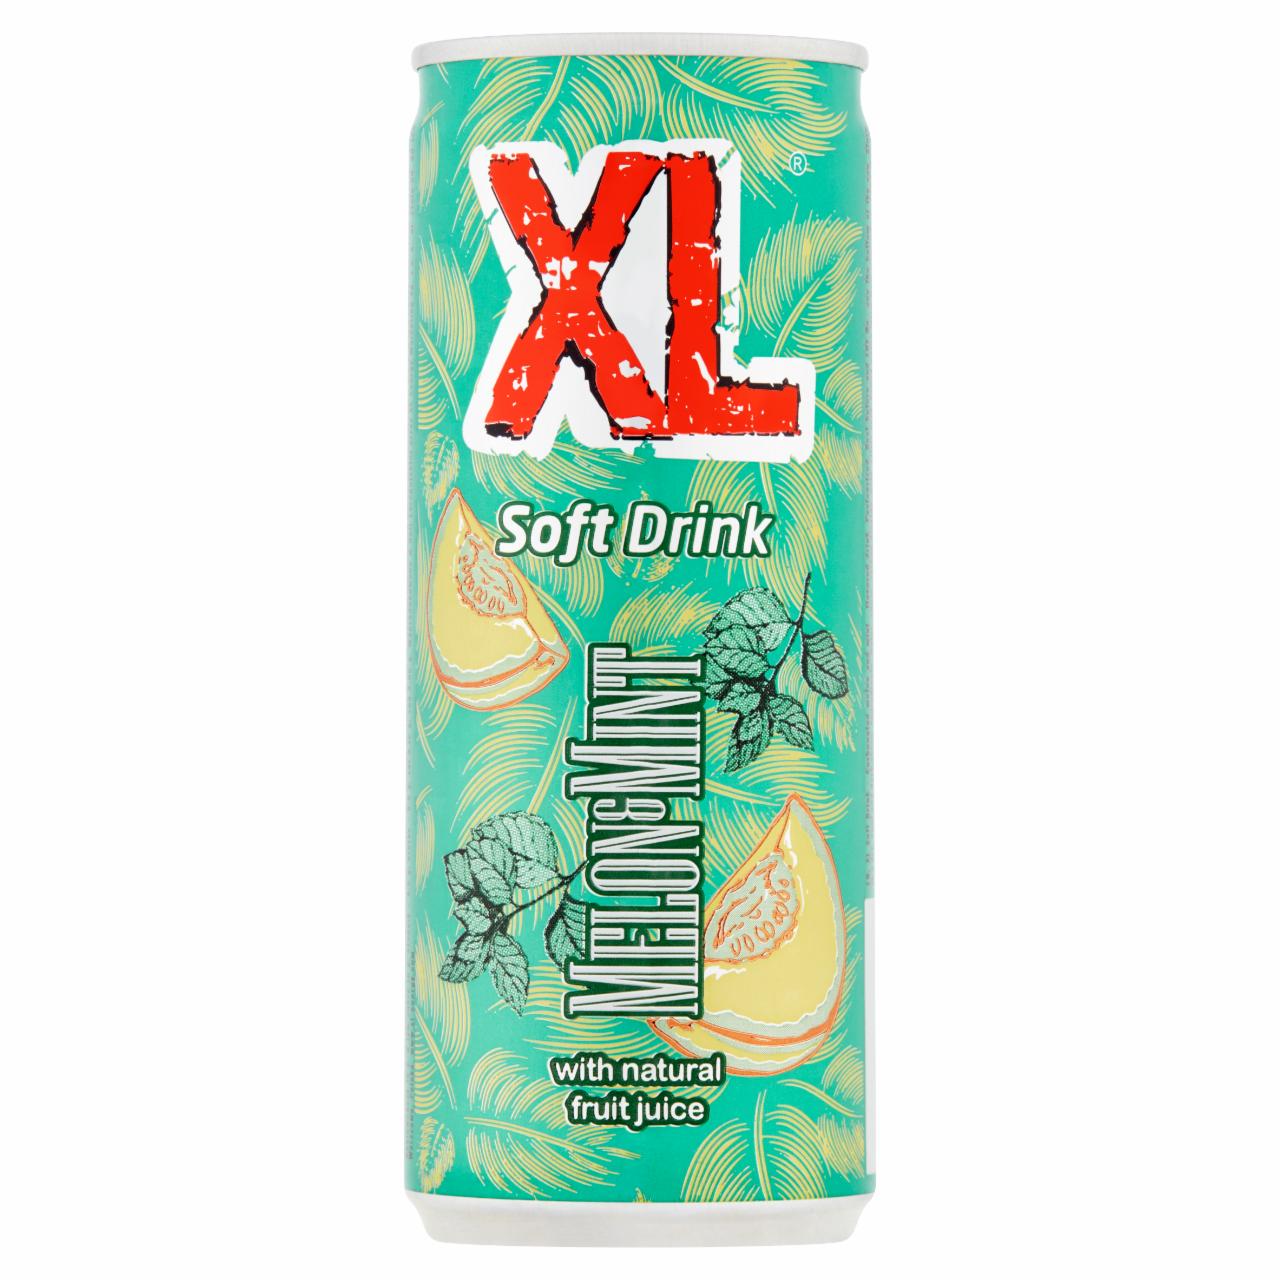 Zdjęcia - XL Soft Drink Gazowany napój o smaku melonowo-miętowym 250 ml